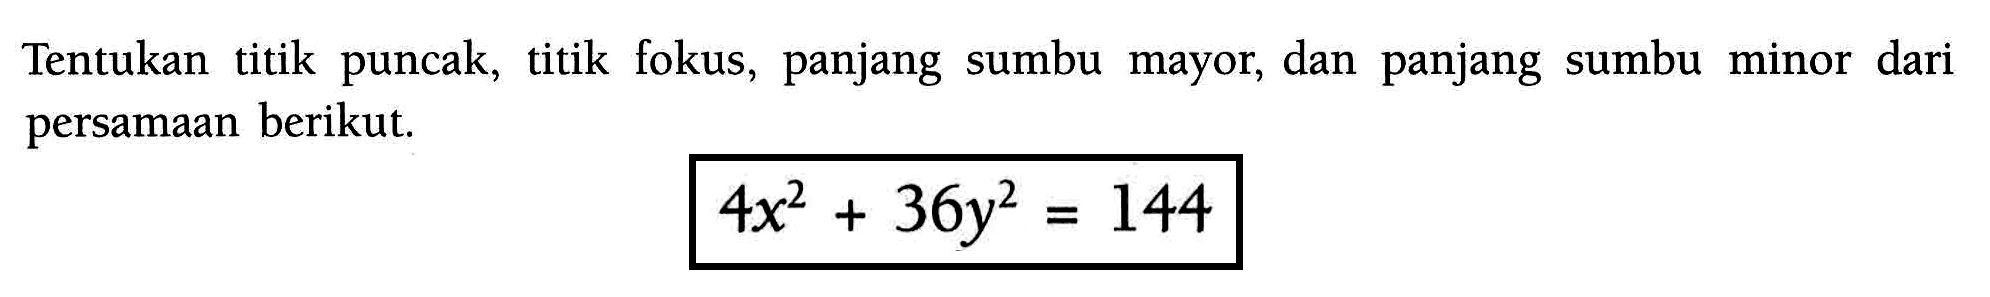 Tentukan titik puncak, titik fokus, panjang sumbu mayor, dan panjang sumbu minor dari persamaan berikut. 4x^2+36y^2=144